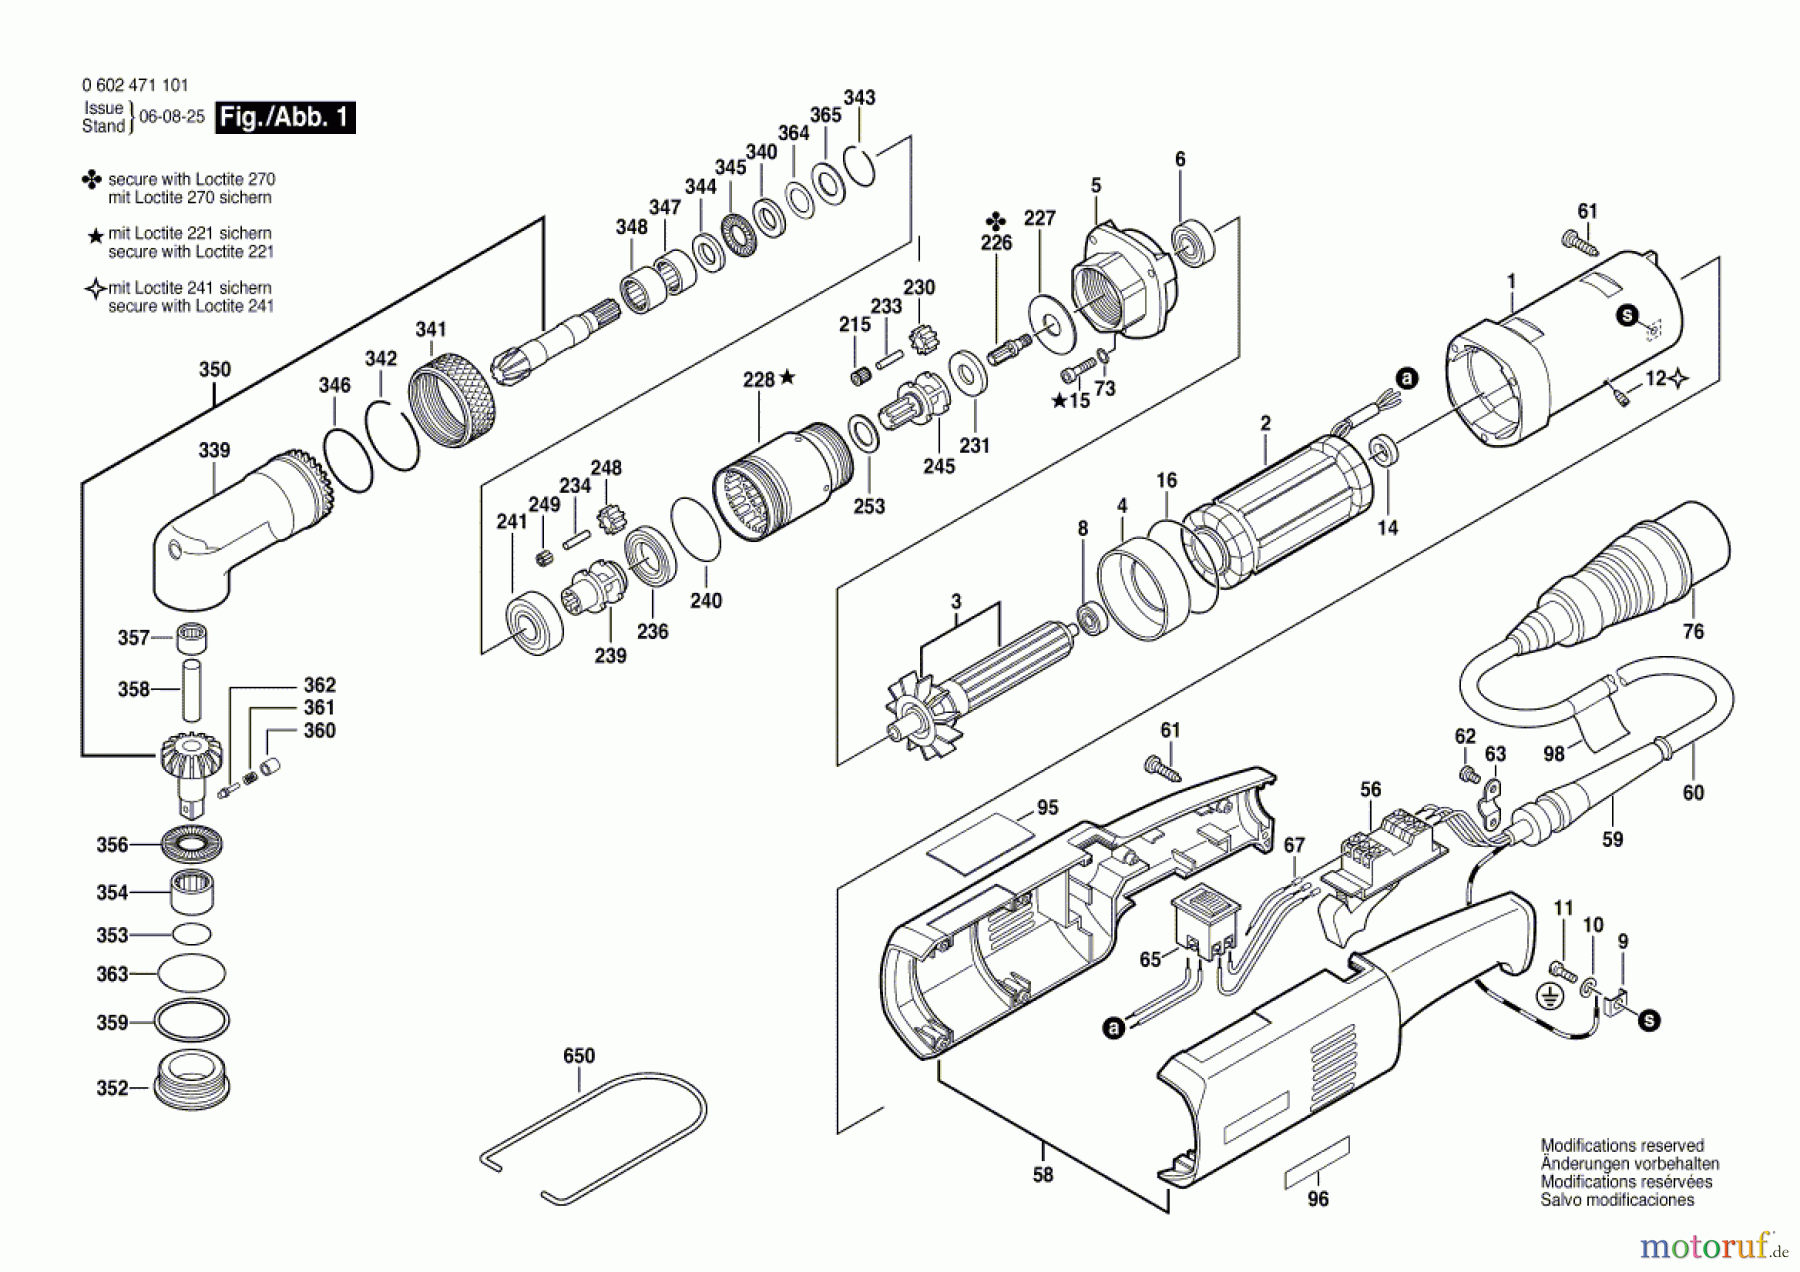  Bosch Werkzeug Winkelschrauber ---- Seite 1